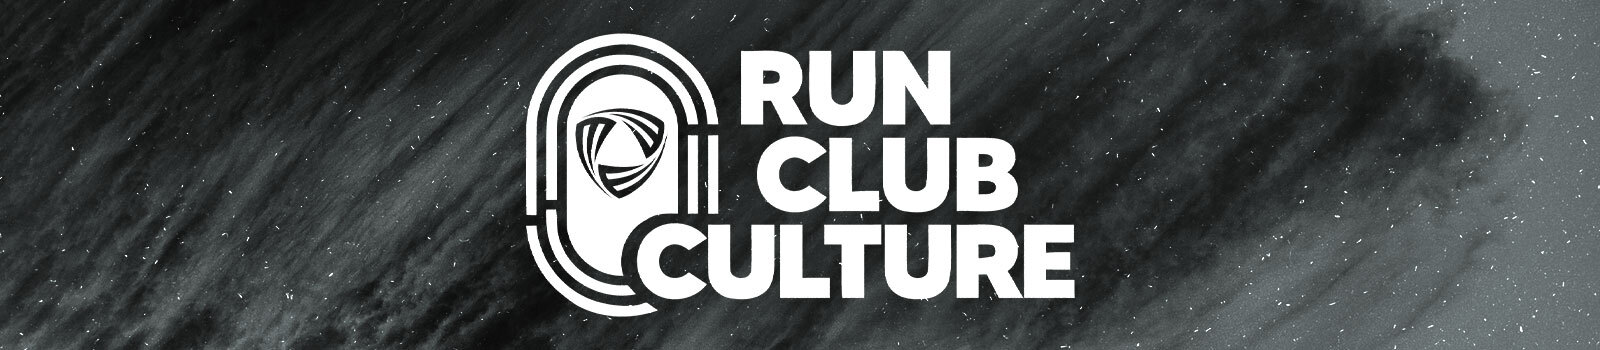 Run Club Culture